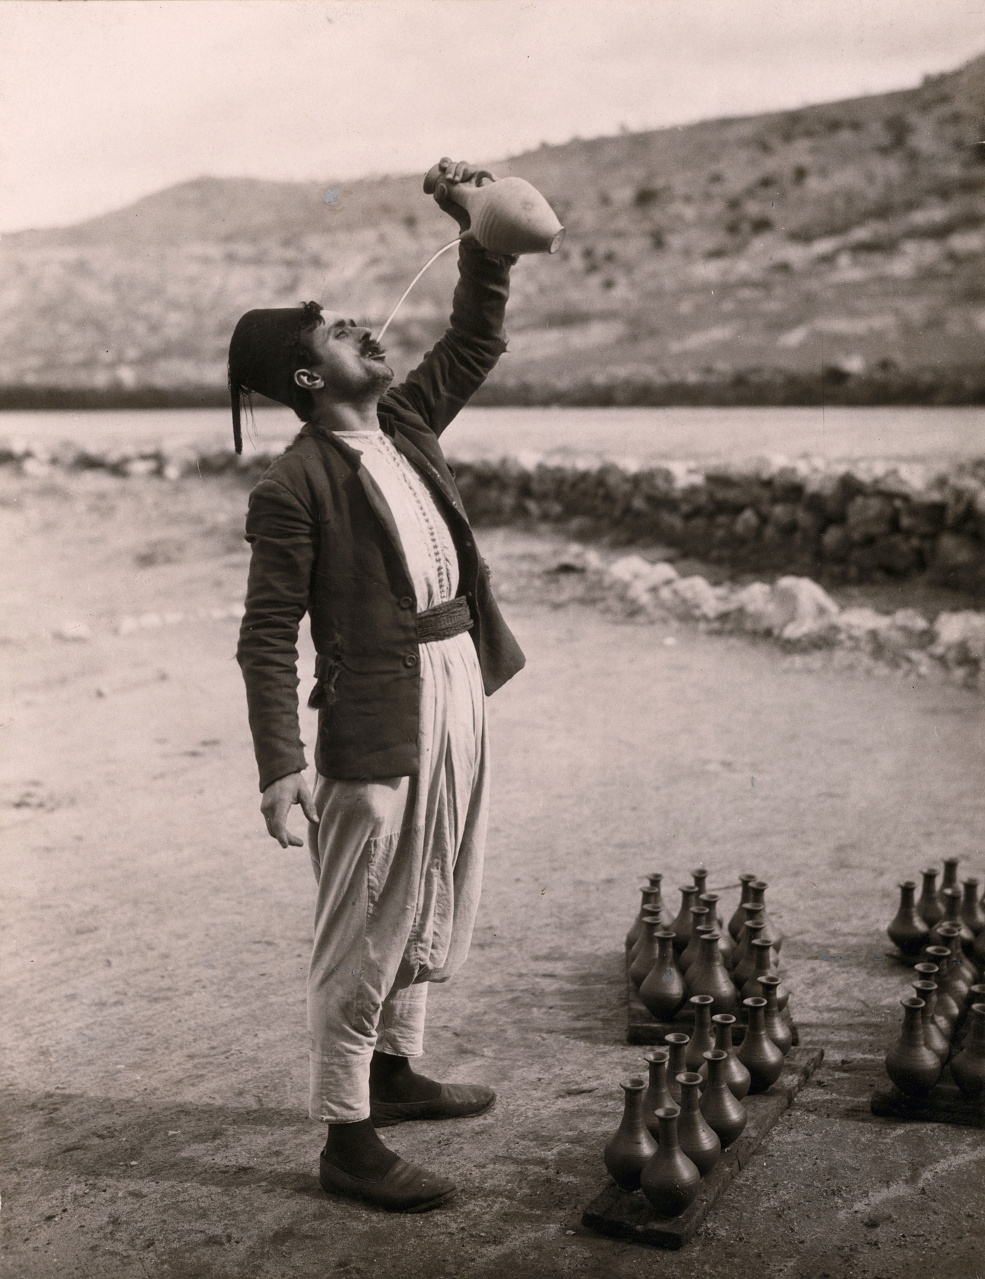  |Maynard Owen Williams, Mann an der Straße von Beirut nach Sidon, 1926 (© National Geographic Image Collection)